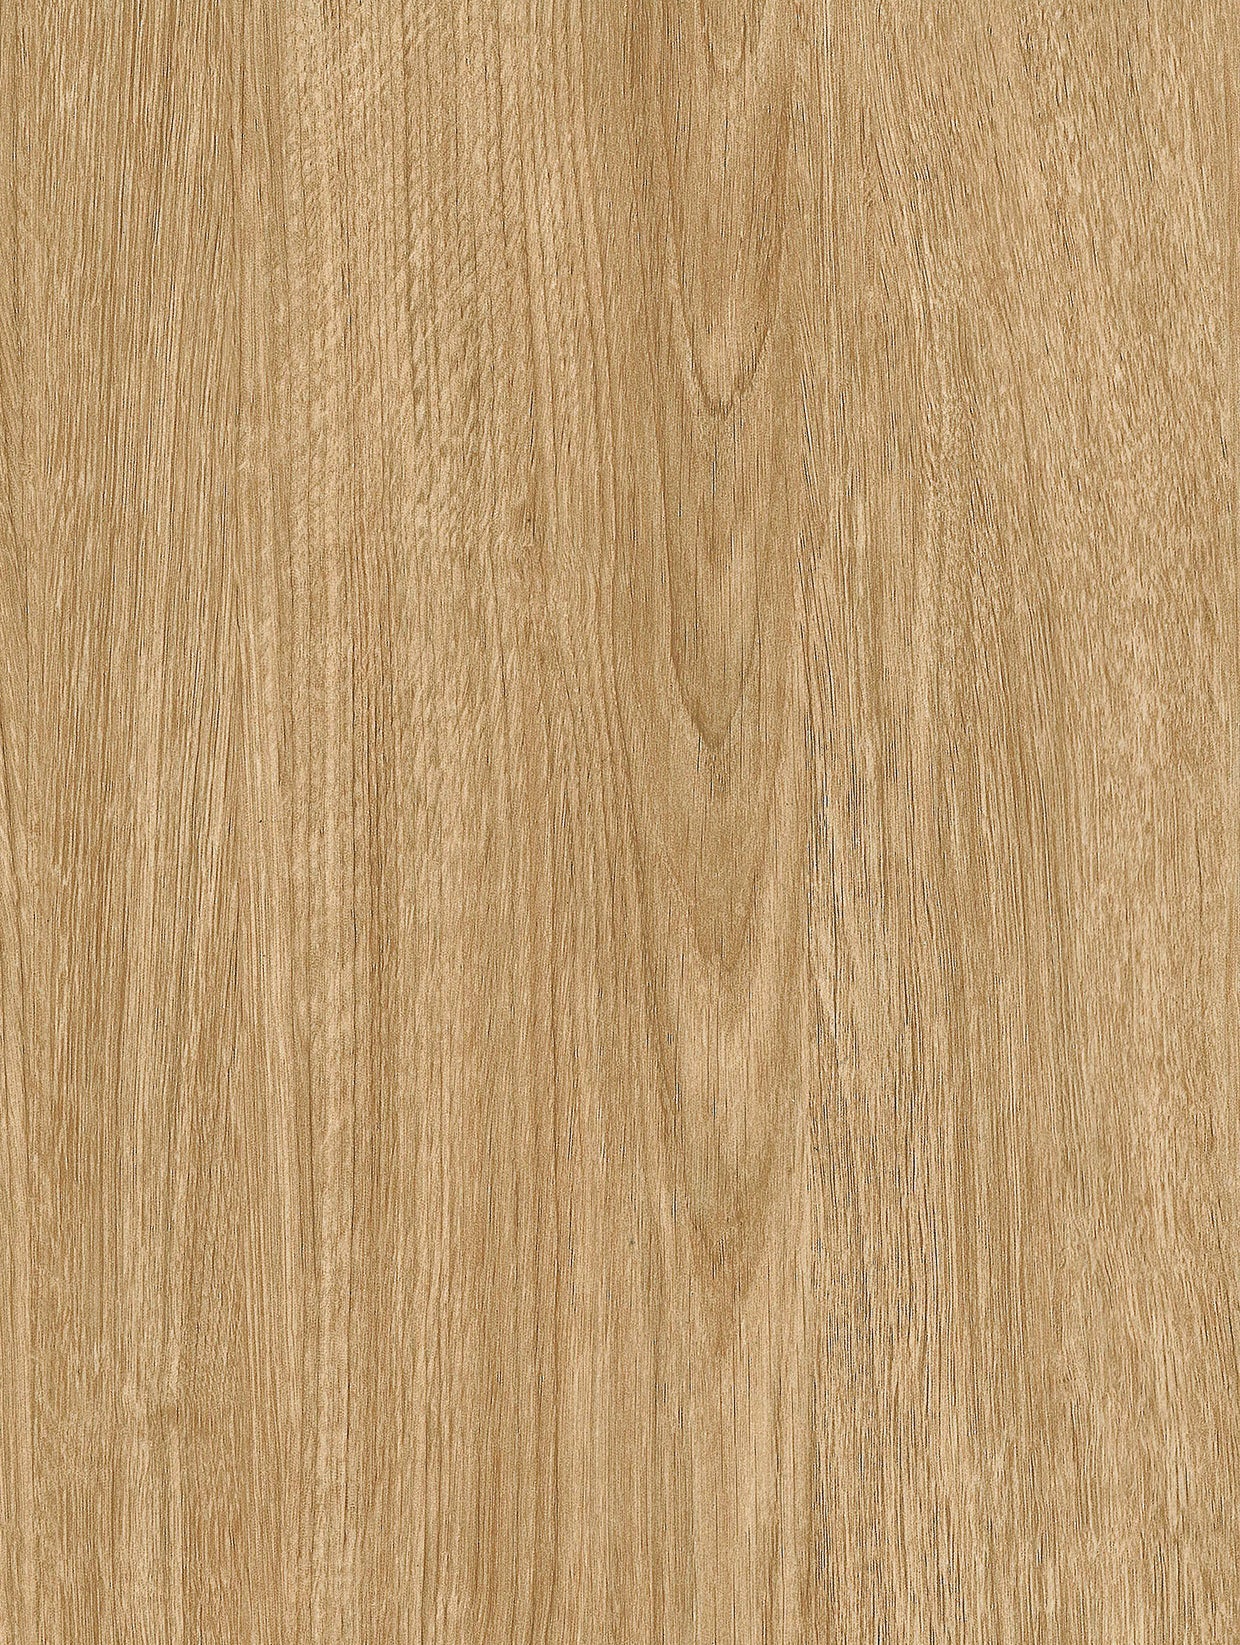 Wood - Light | Holzdekor Hell Rost/Soft/Strukturiert Musterfolie A5